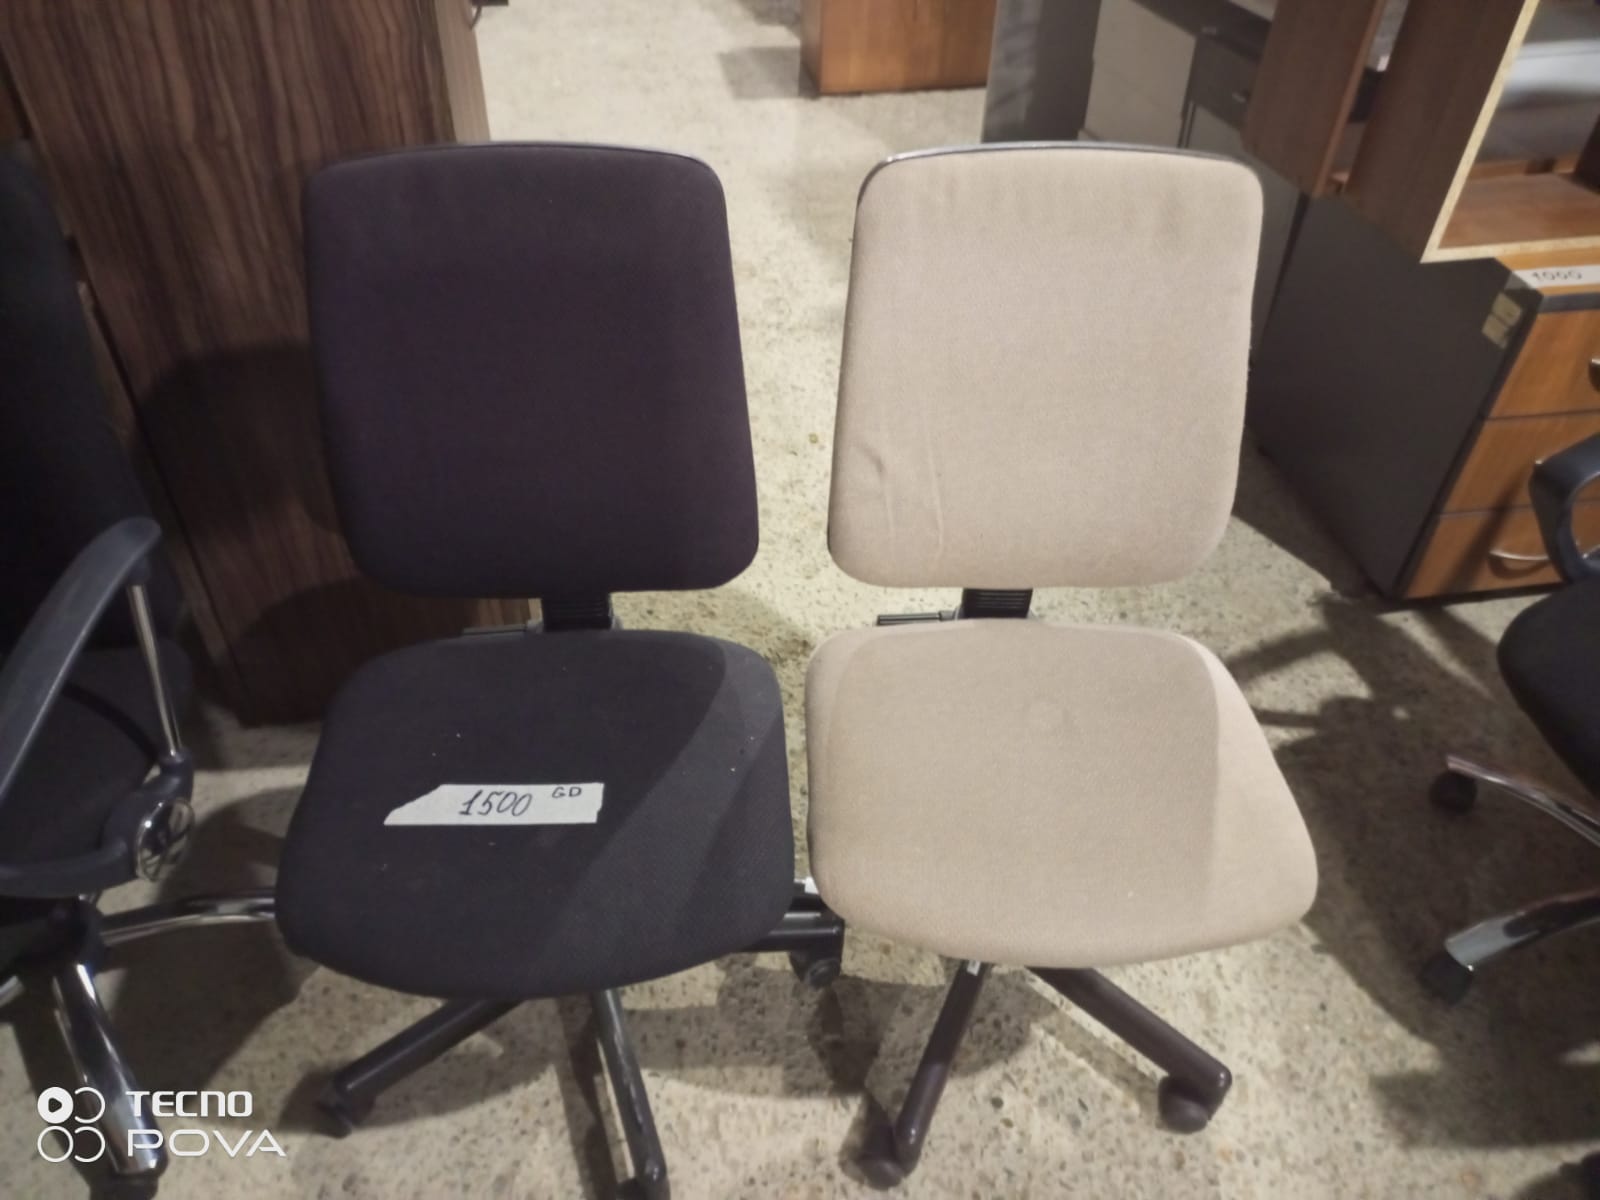 Кресло GS без подлокотников, газпатрон, ткань, Германия, до 120кг, цвета в ассортименте, б/у С МЕЛКИКИ ДЕФЕКТАМИ